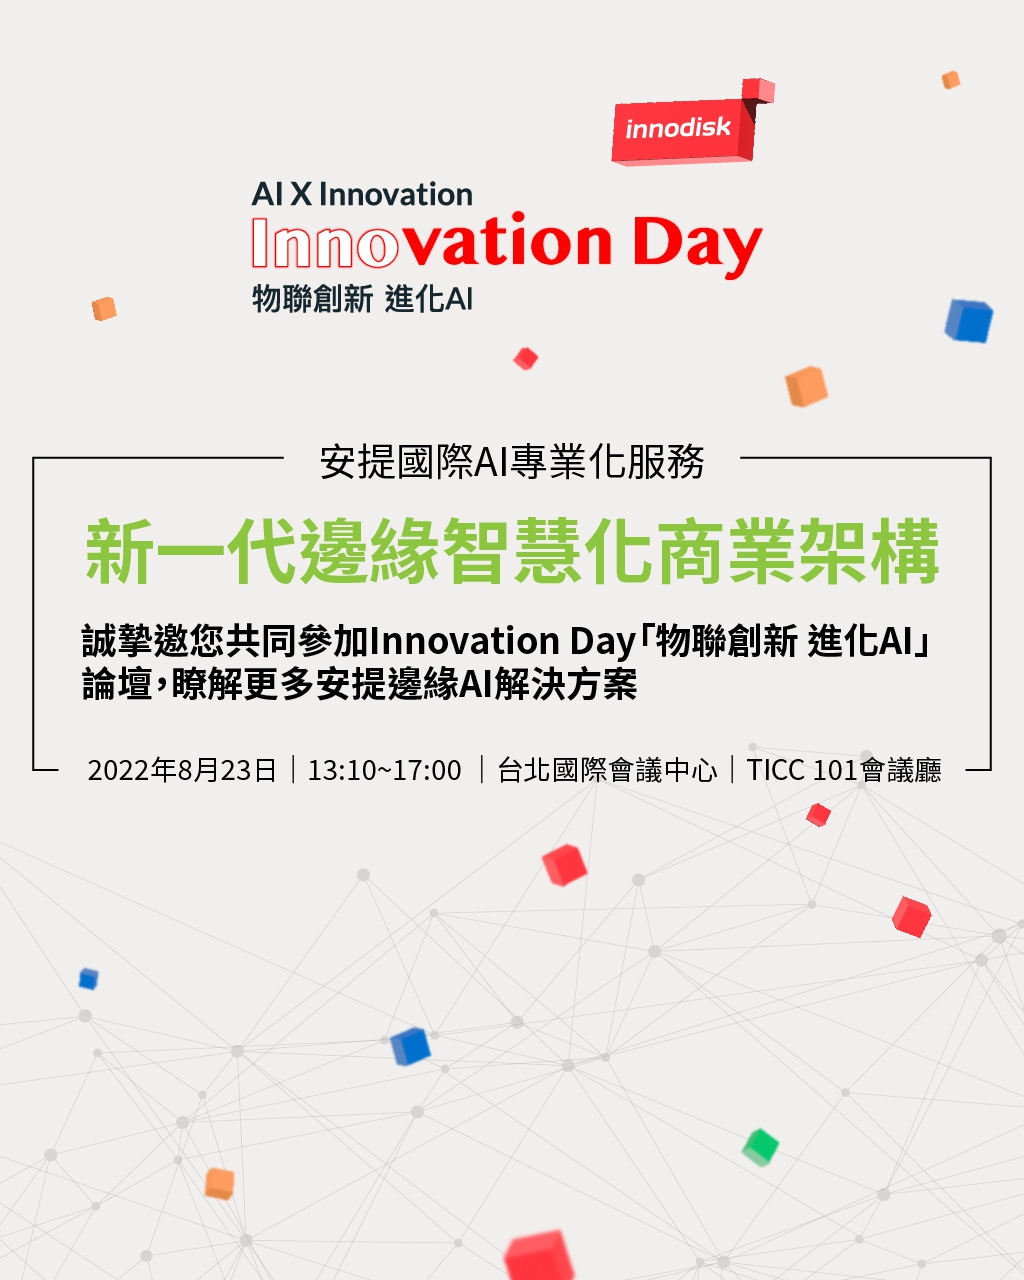 誠摯邀您共同參加Innovation Day「物聯創新 進化AI」論壇，瞭解更多安提邊緣AI解決方案